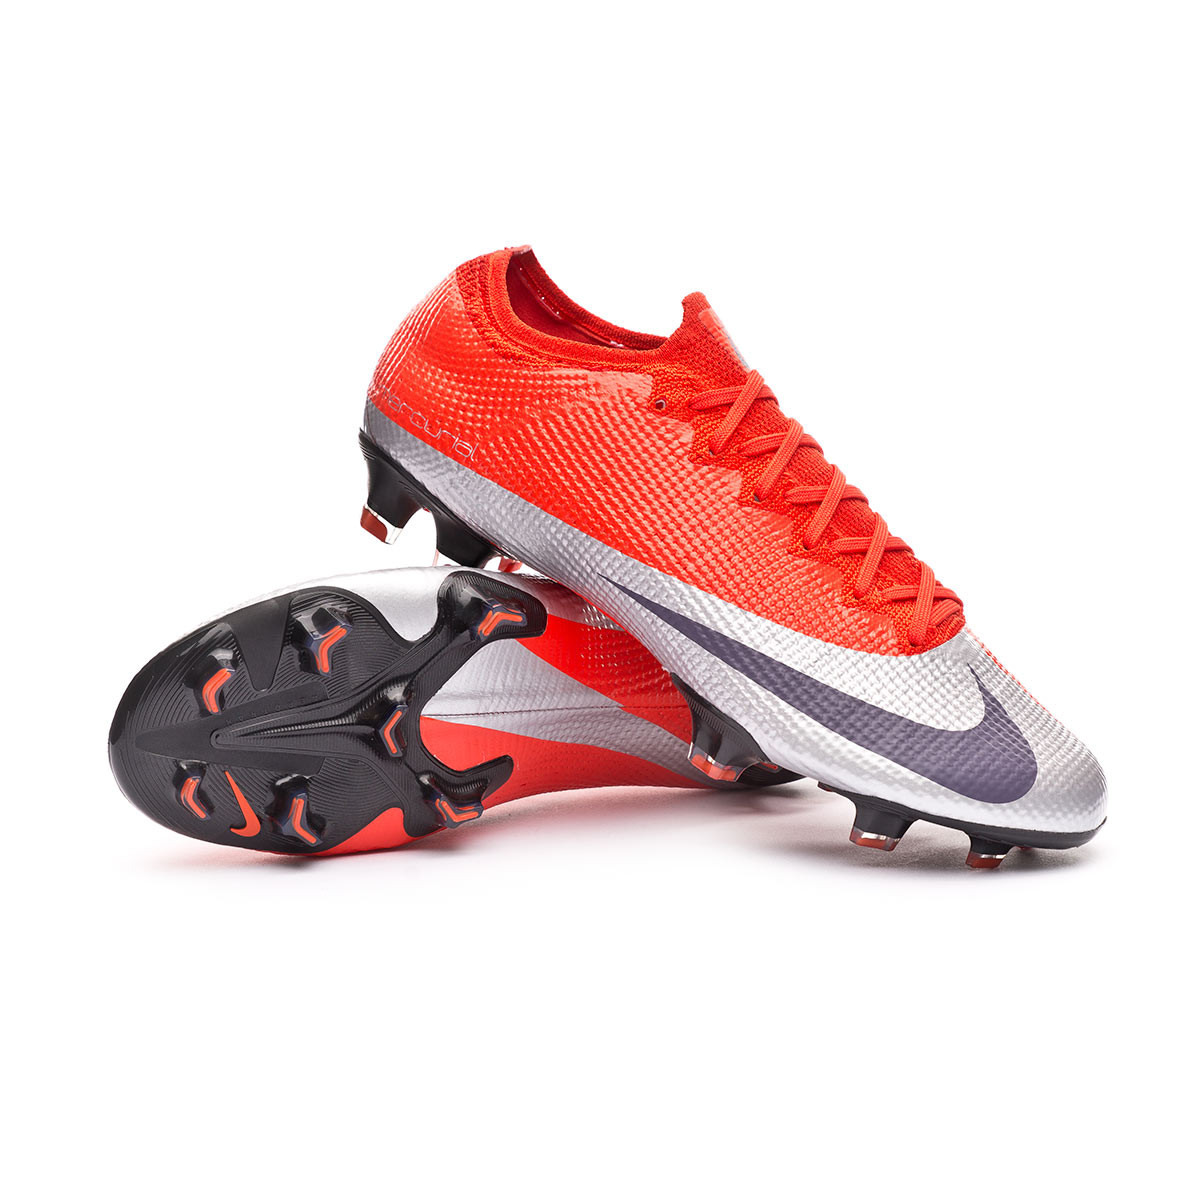 Zapatos de fútbol Nike Mercurial Vapor XIII Elite FG Max orange-Metallic  silver-Black - Tienda de fútbol Fútbol Emotion